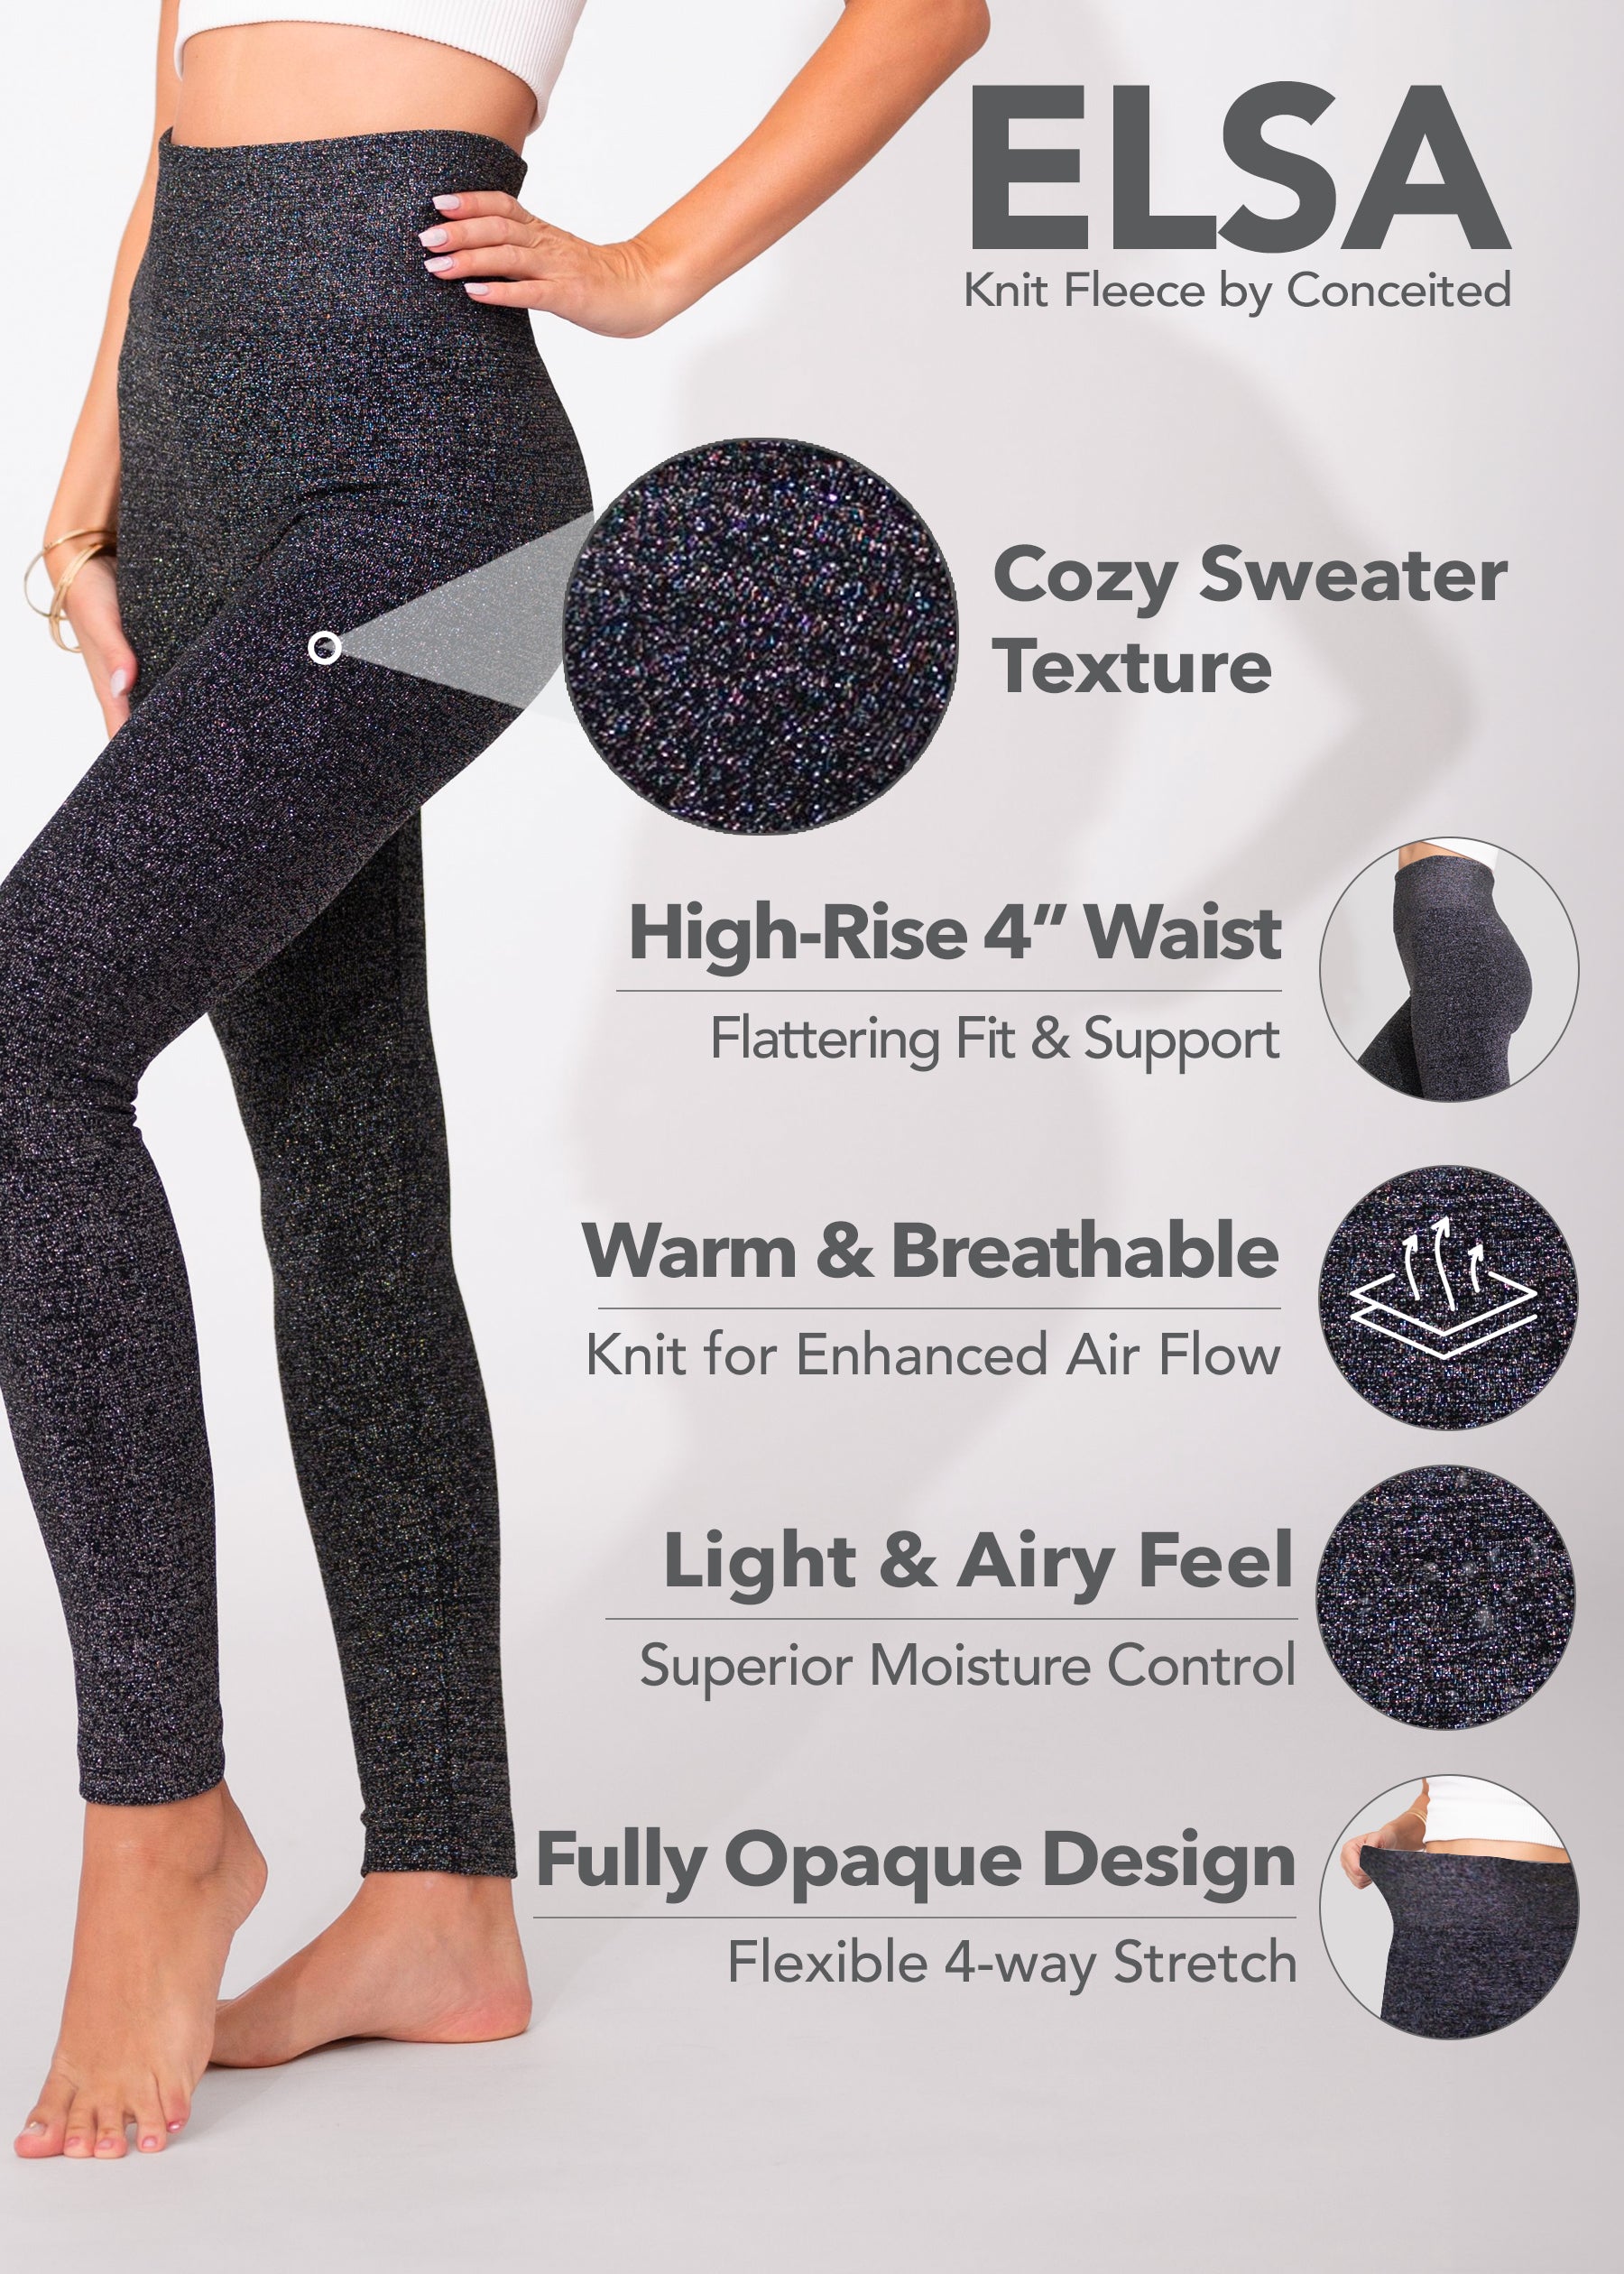 Elsa High Waisted Knit Fleece Lined Leggings - Winter Warm Leggings - Black Glitter